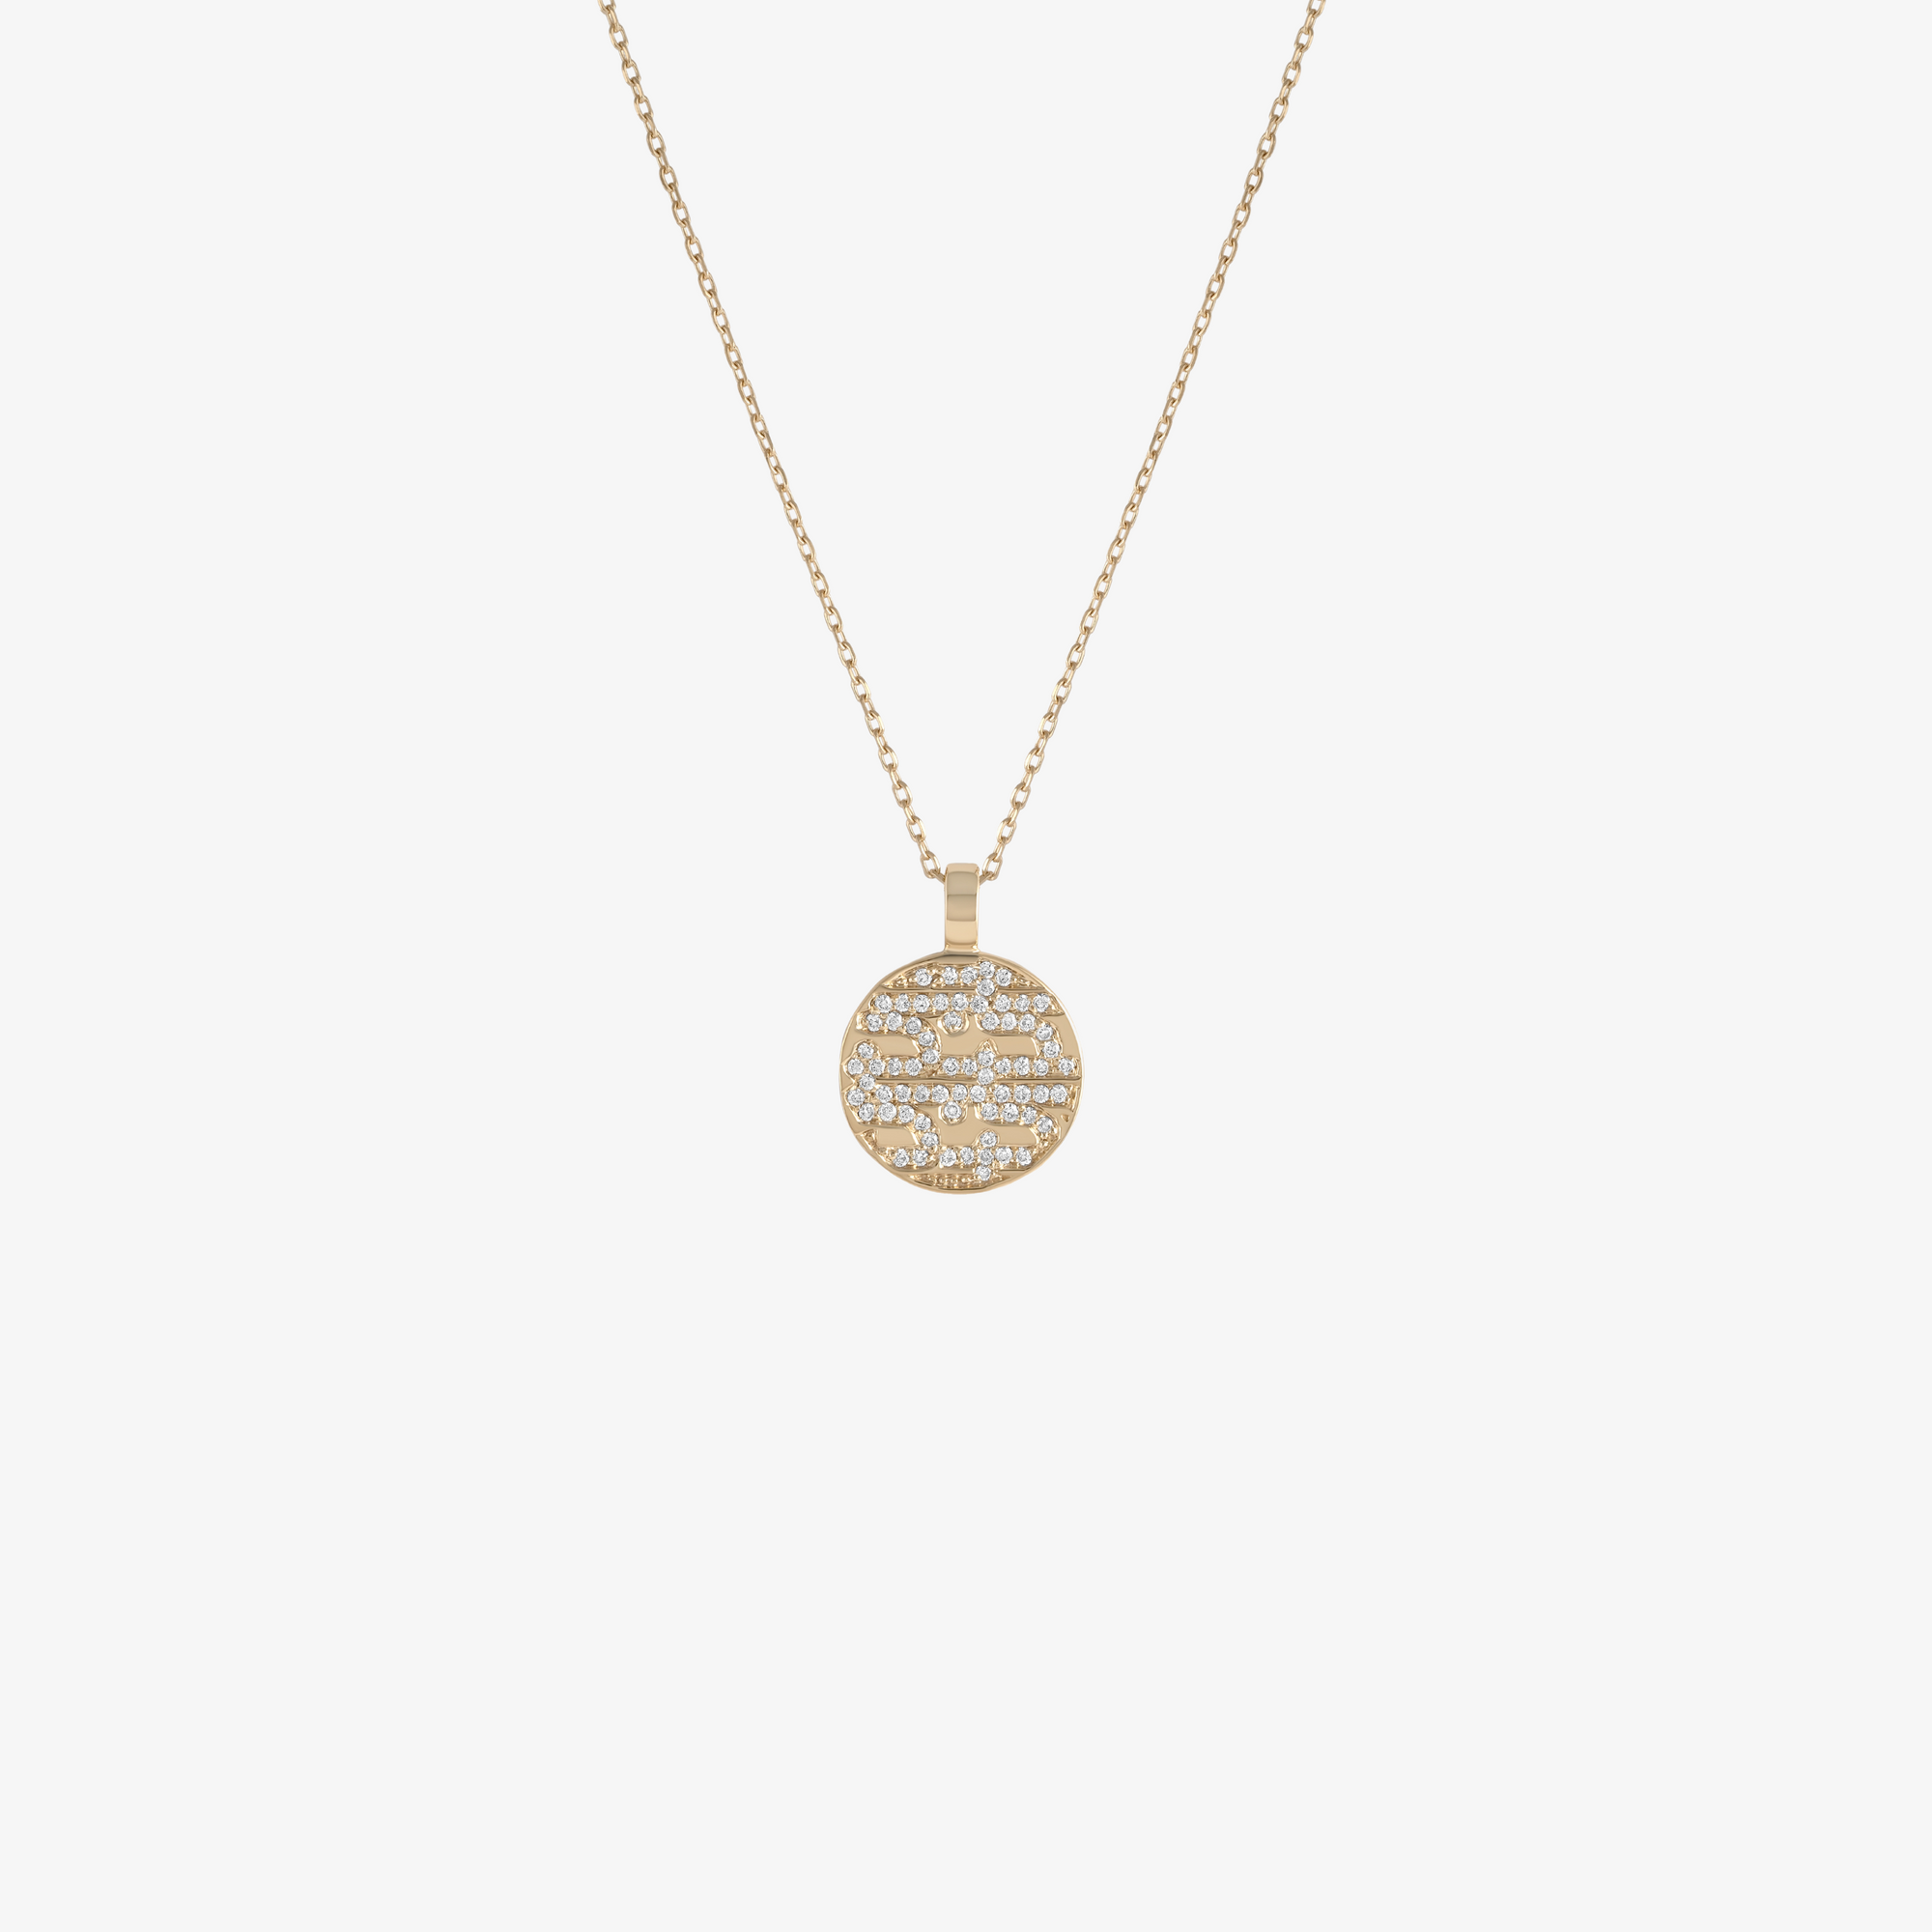 NASJ - Gold & Diamond "Love" Necklace